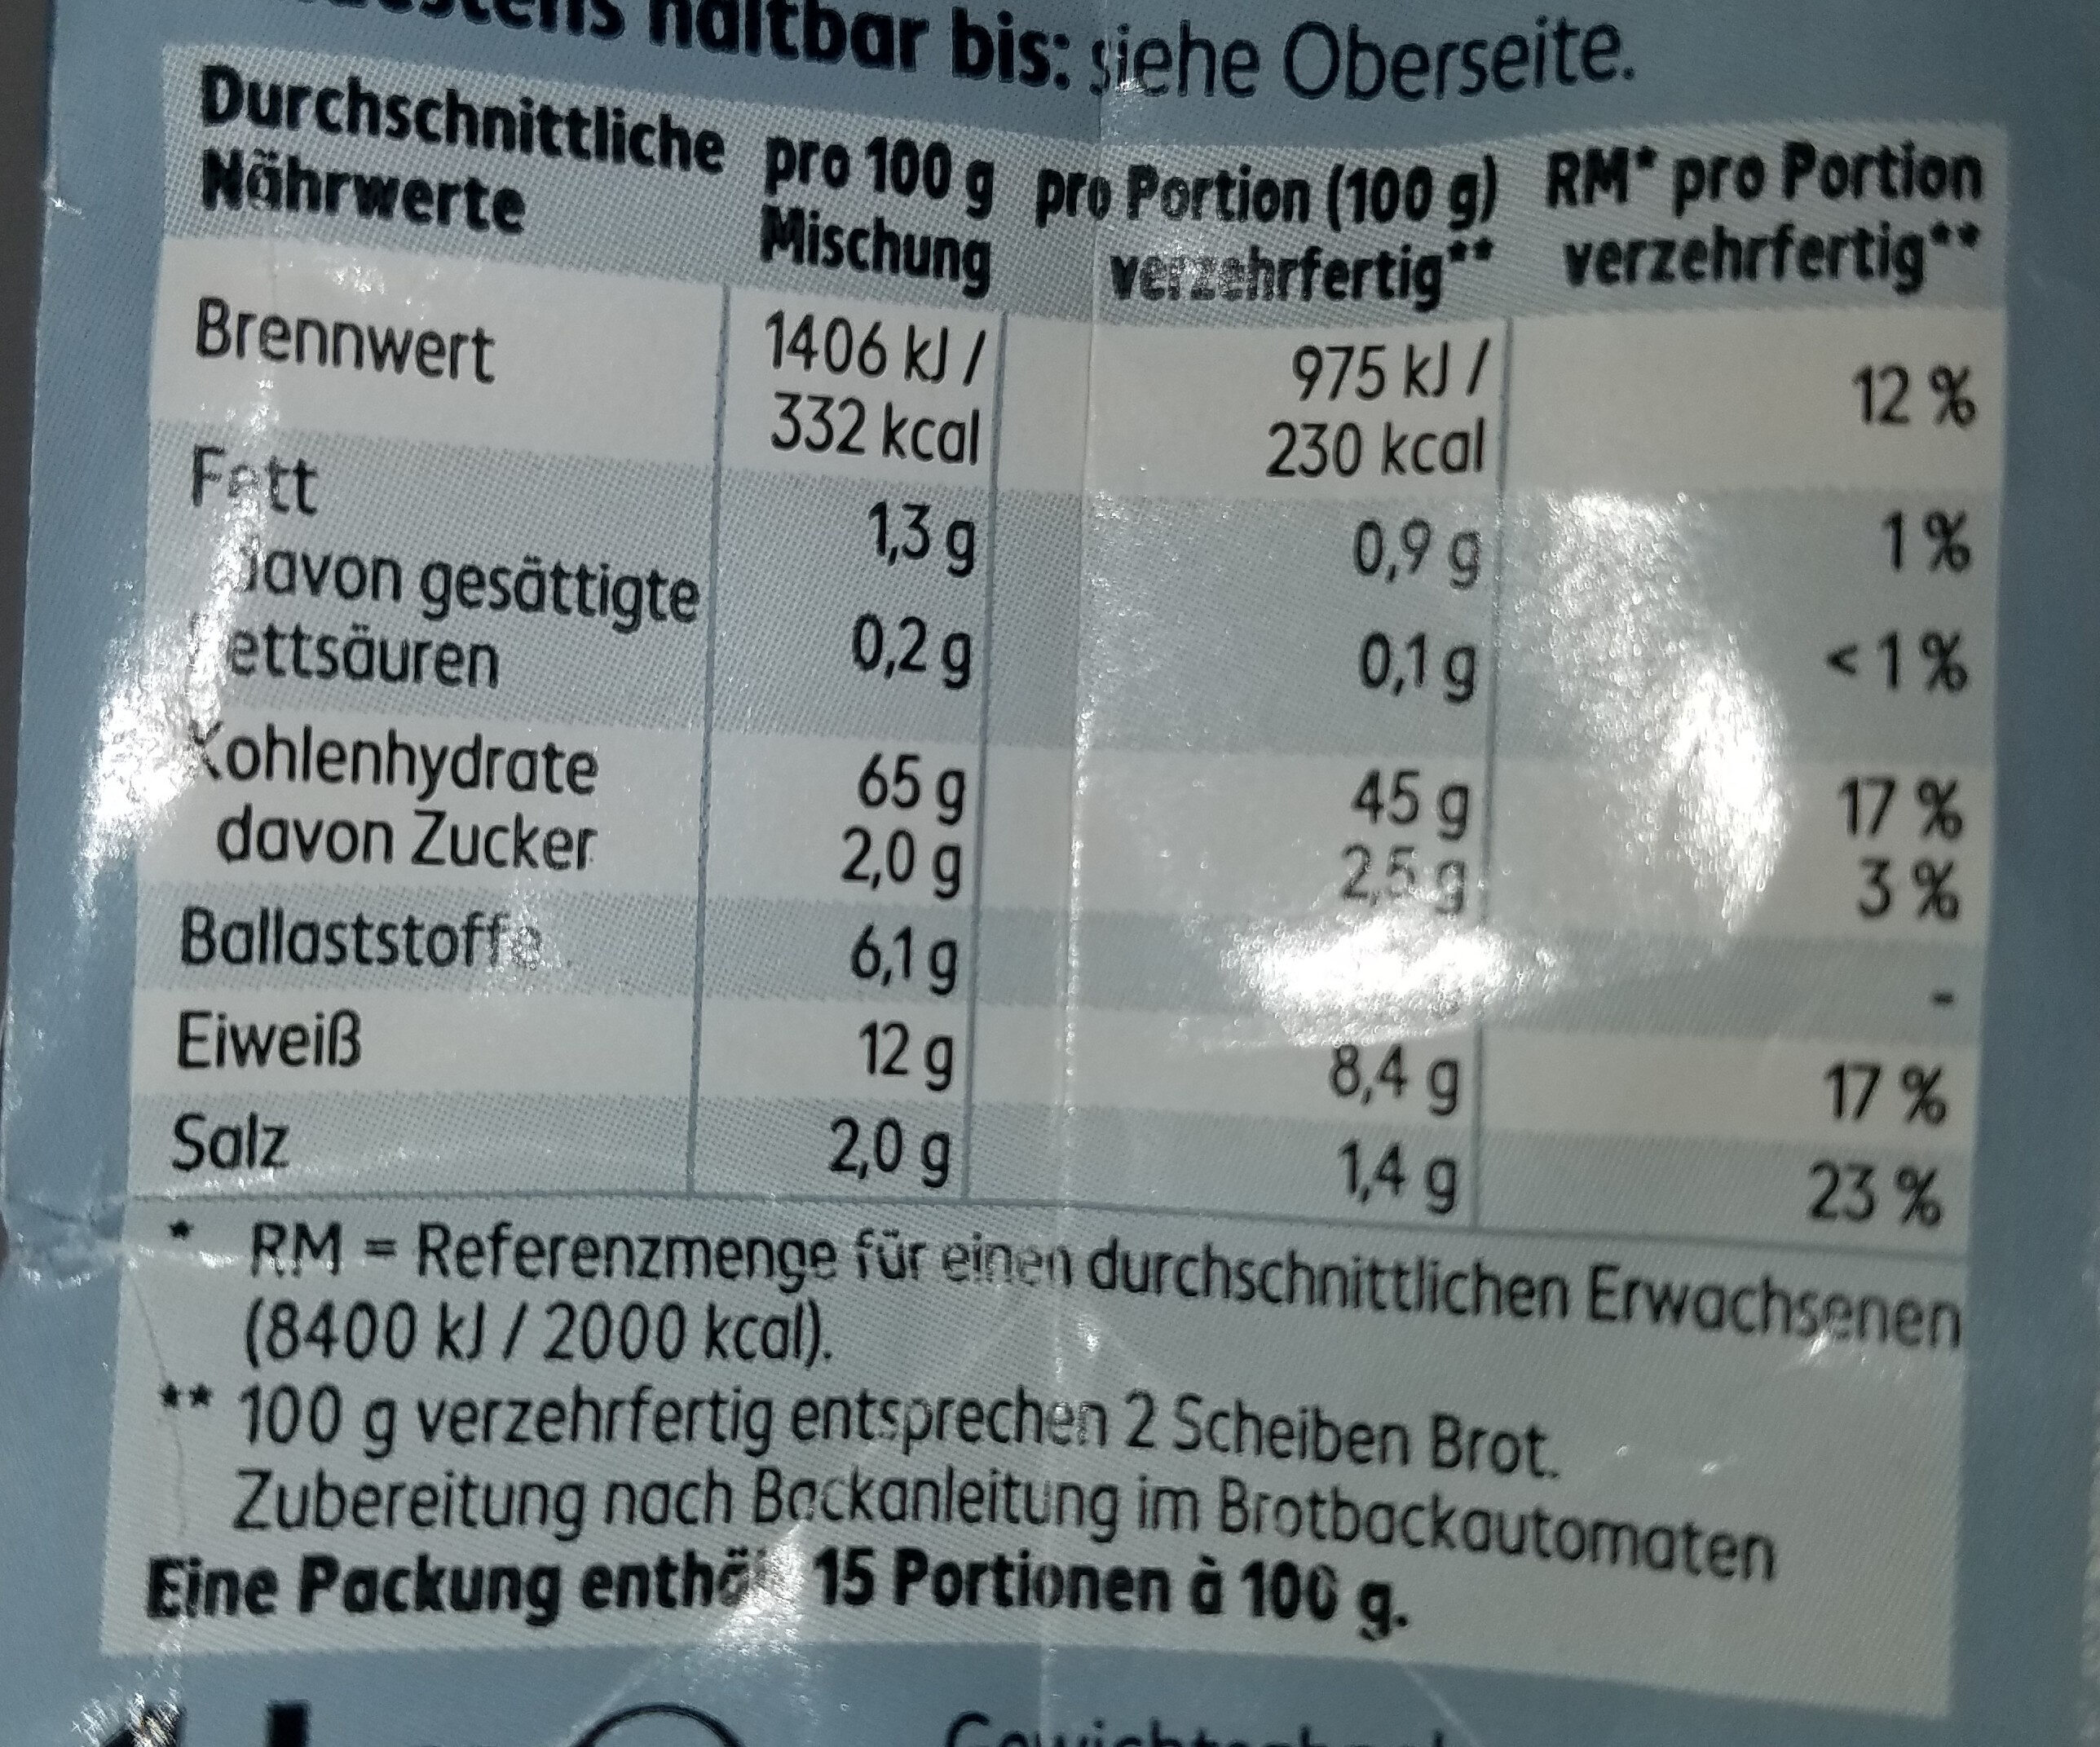 Backmischung - Bauernbrot (verzehrfertig) - Nutrition facts - de